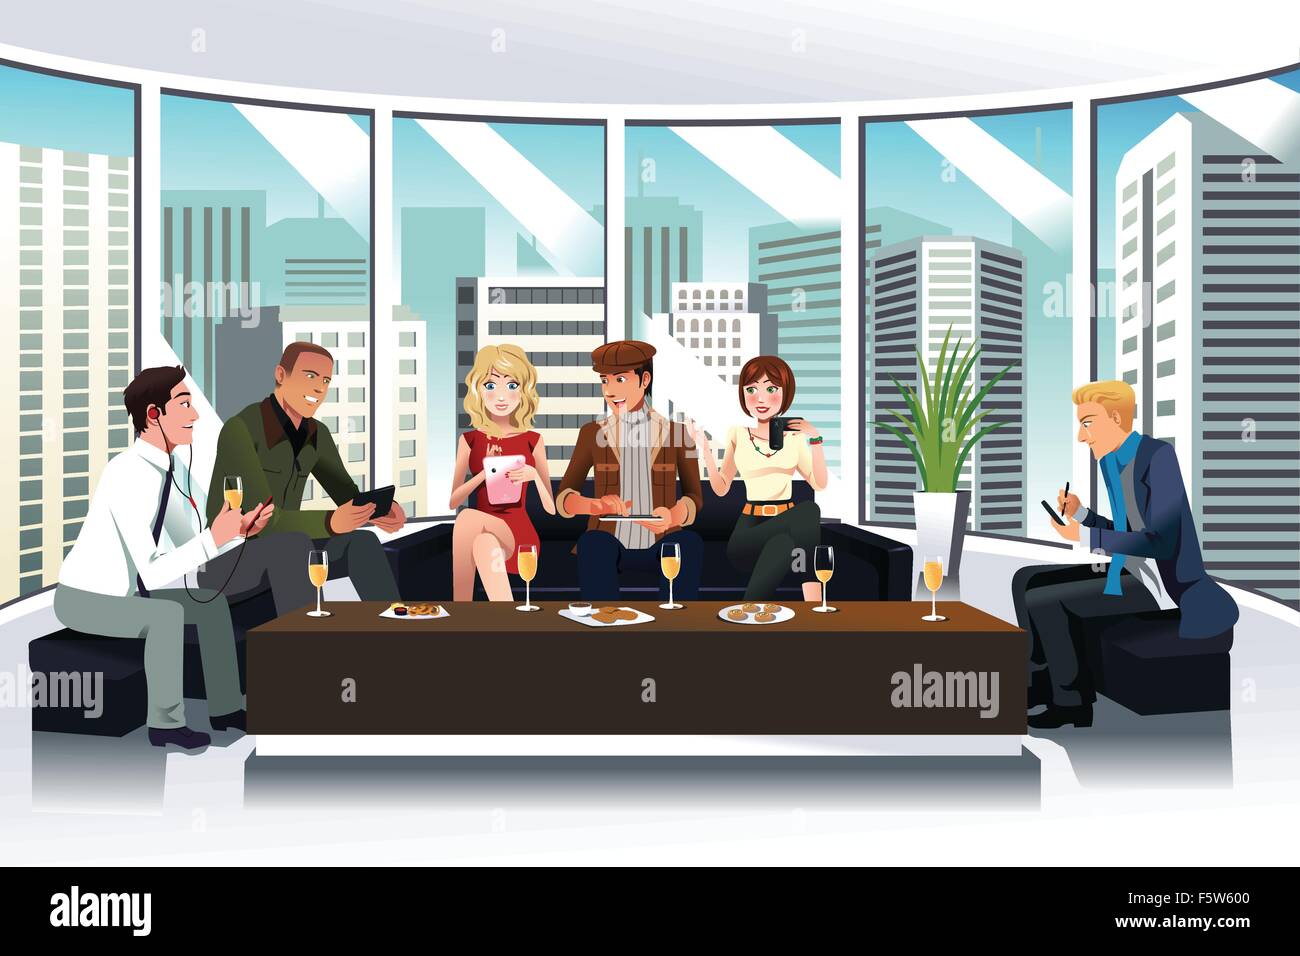 Eine Vektor-Illustration von Menschen in einer Lounge mit elektronischen gadgets Stock Vektor